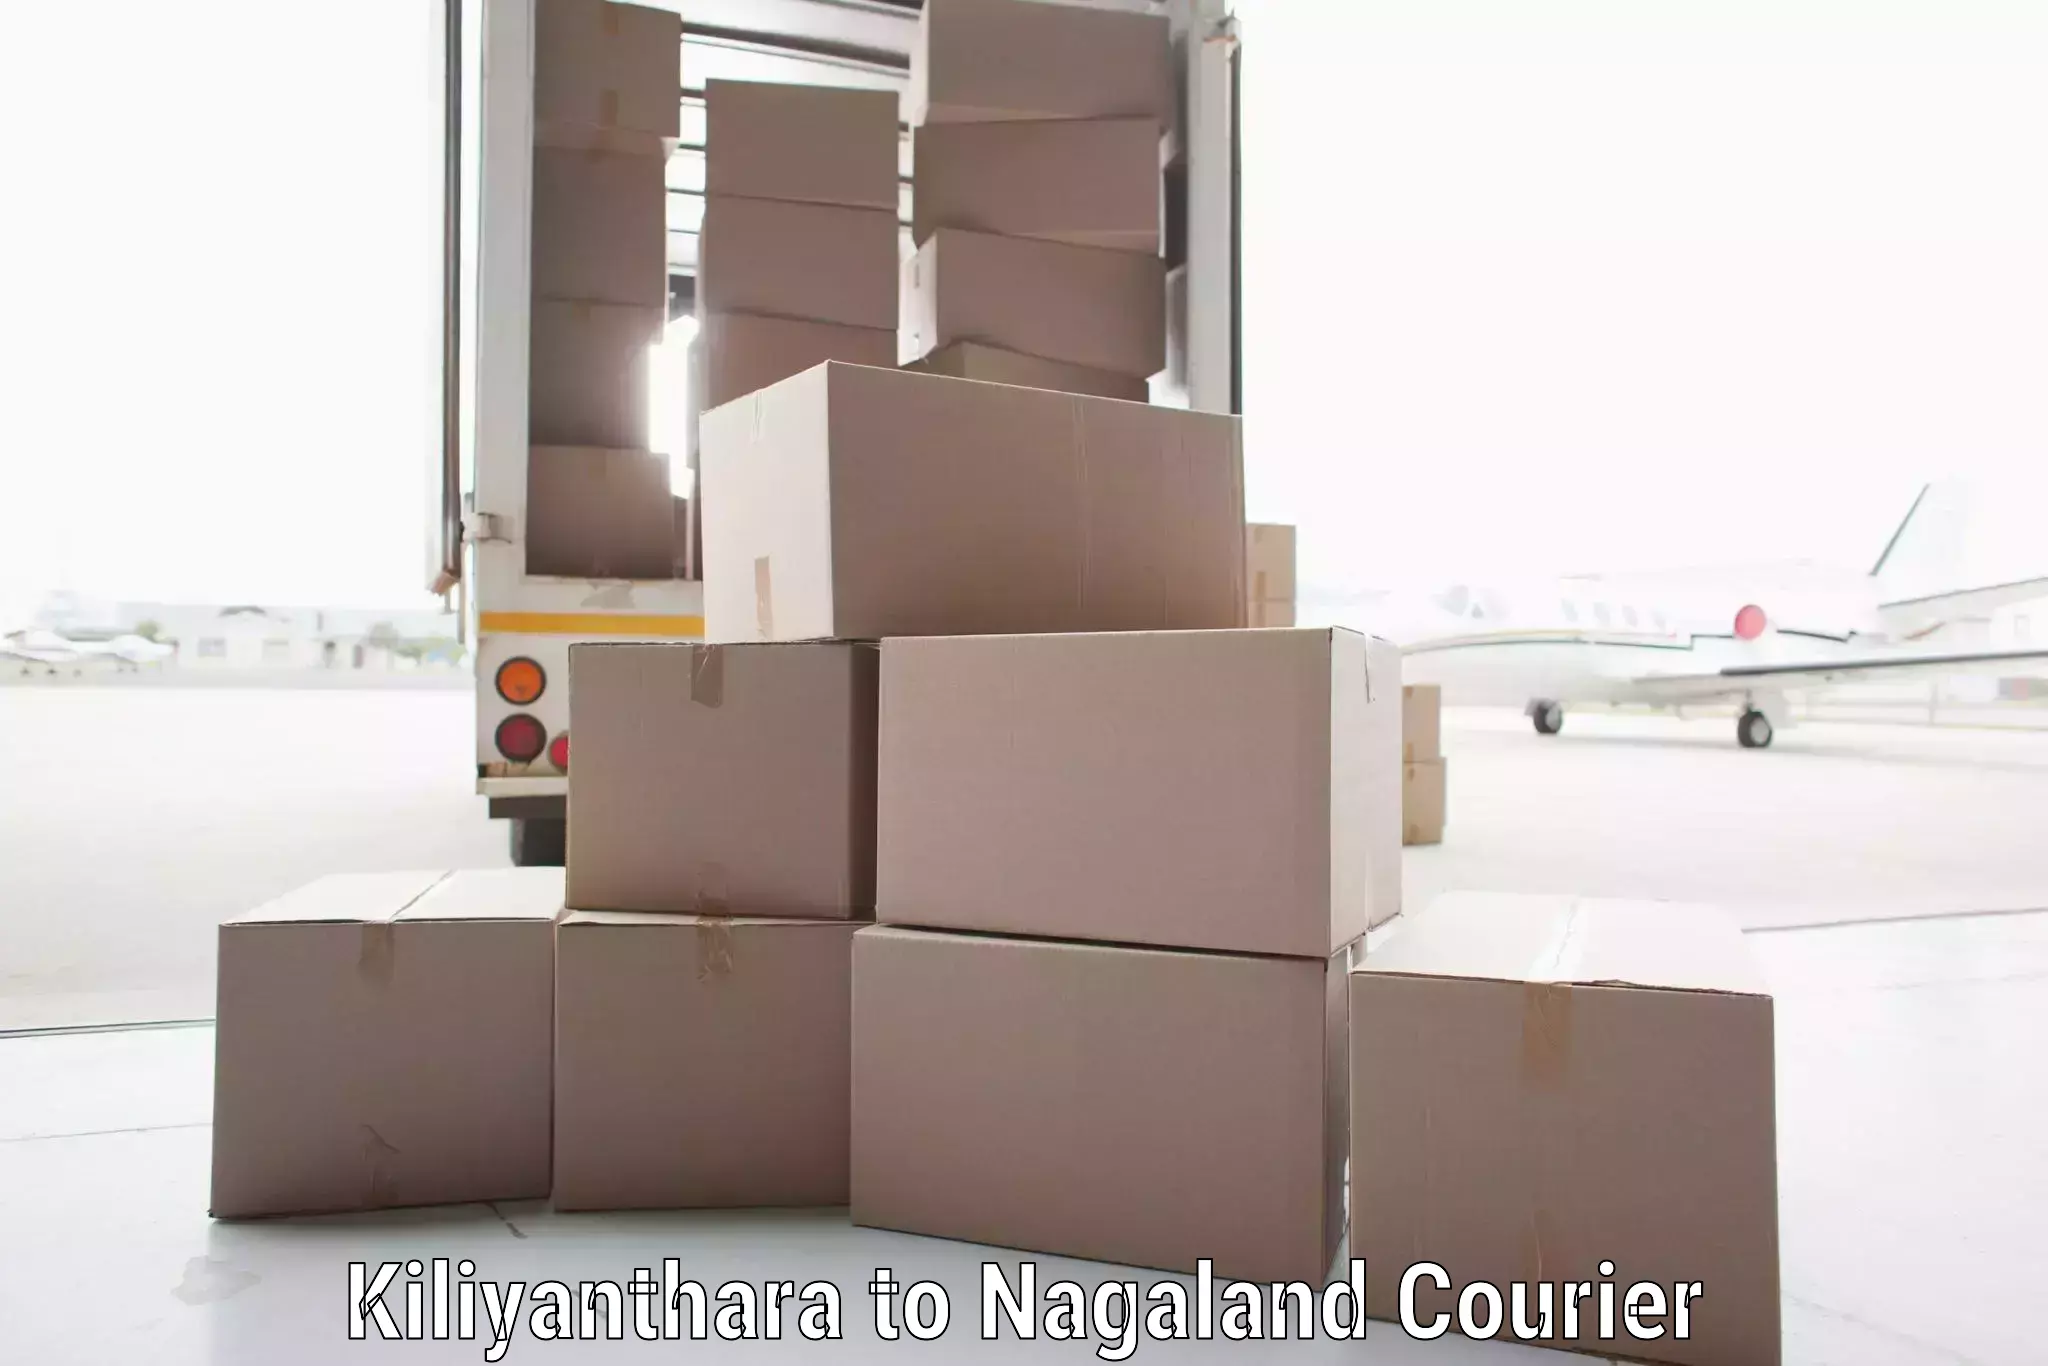 Express delivery solutions Kiliyanthara to NIT Nagaland